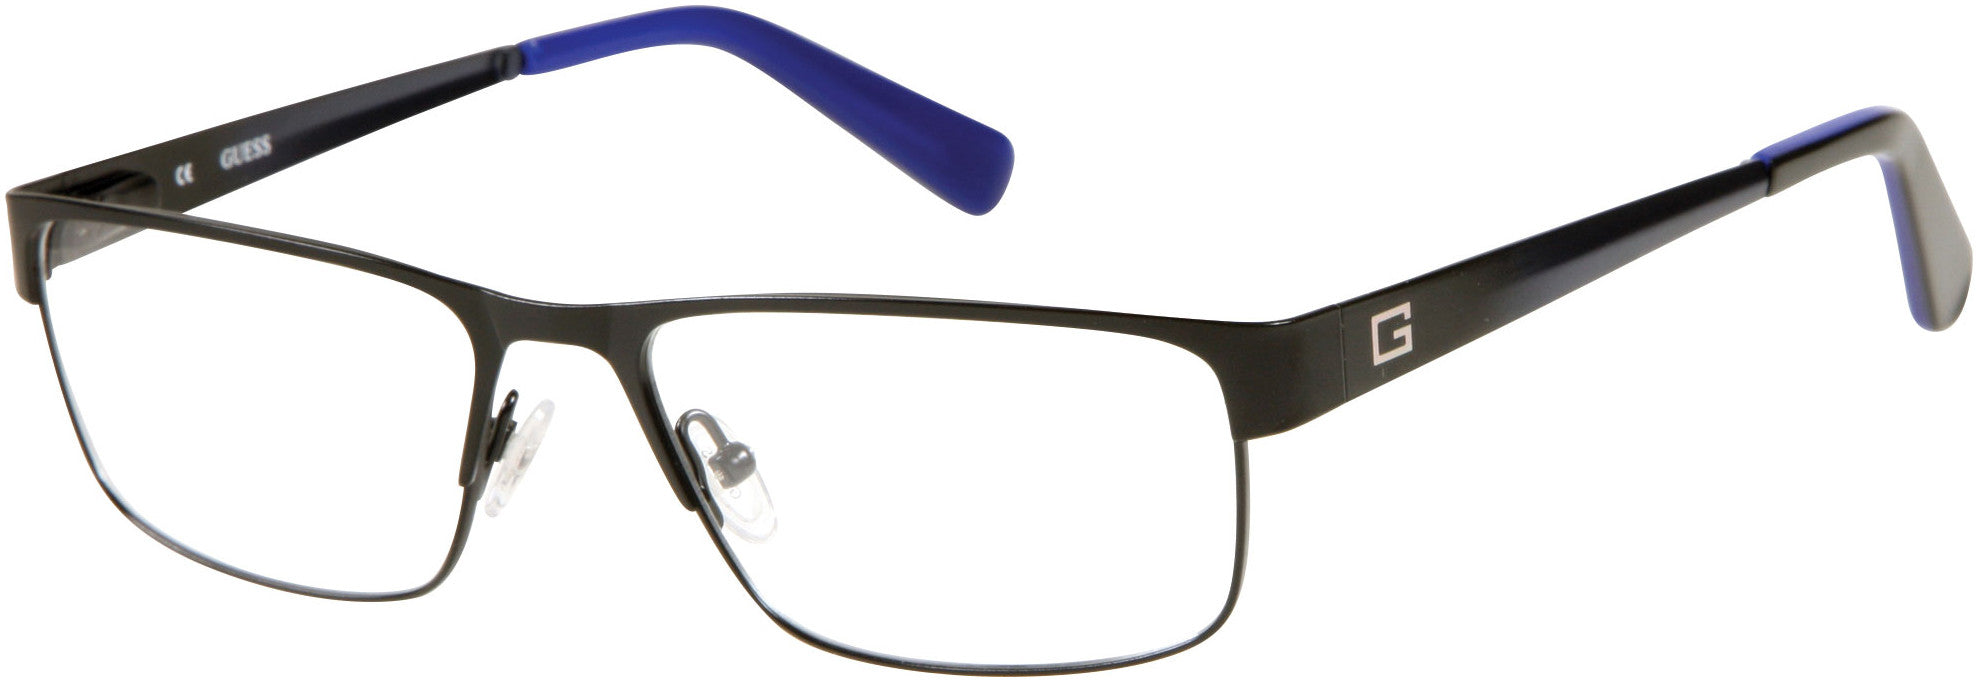 Guess GU1770 Eyeglasses B84-B84 - Black